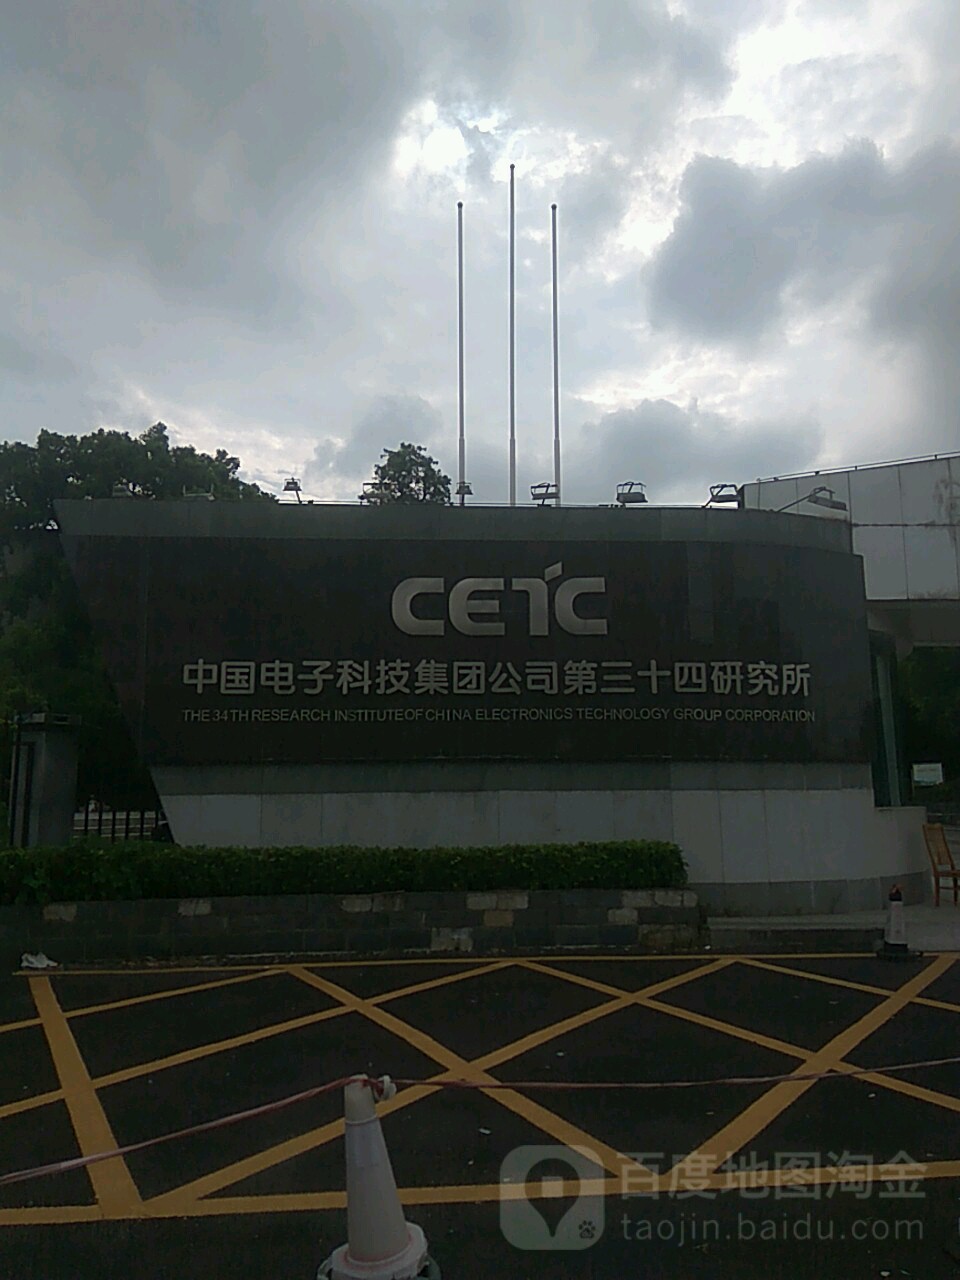 中国电子科技集团公司(第三十四研究所)